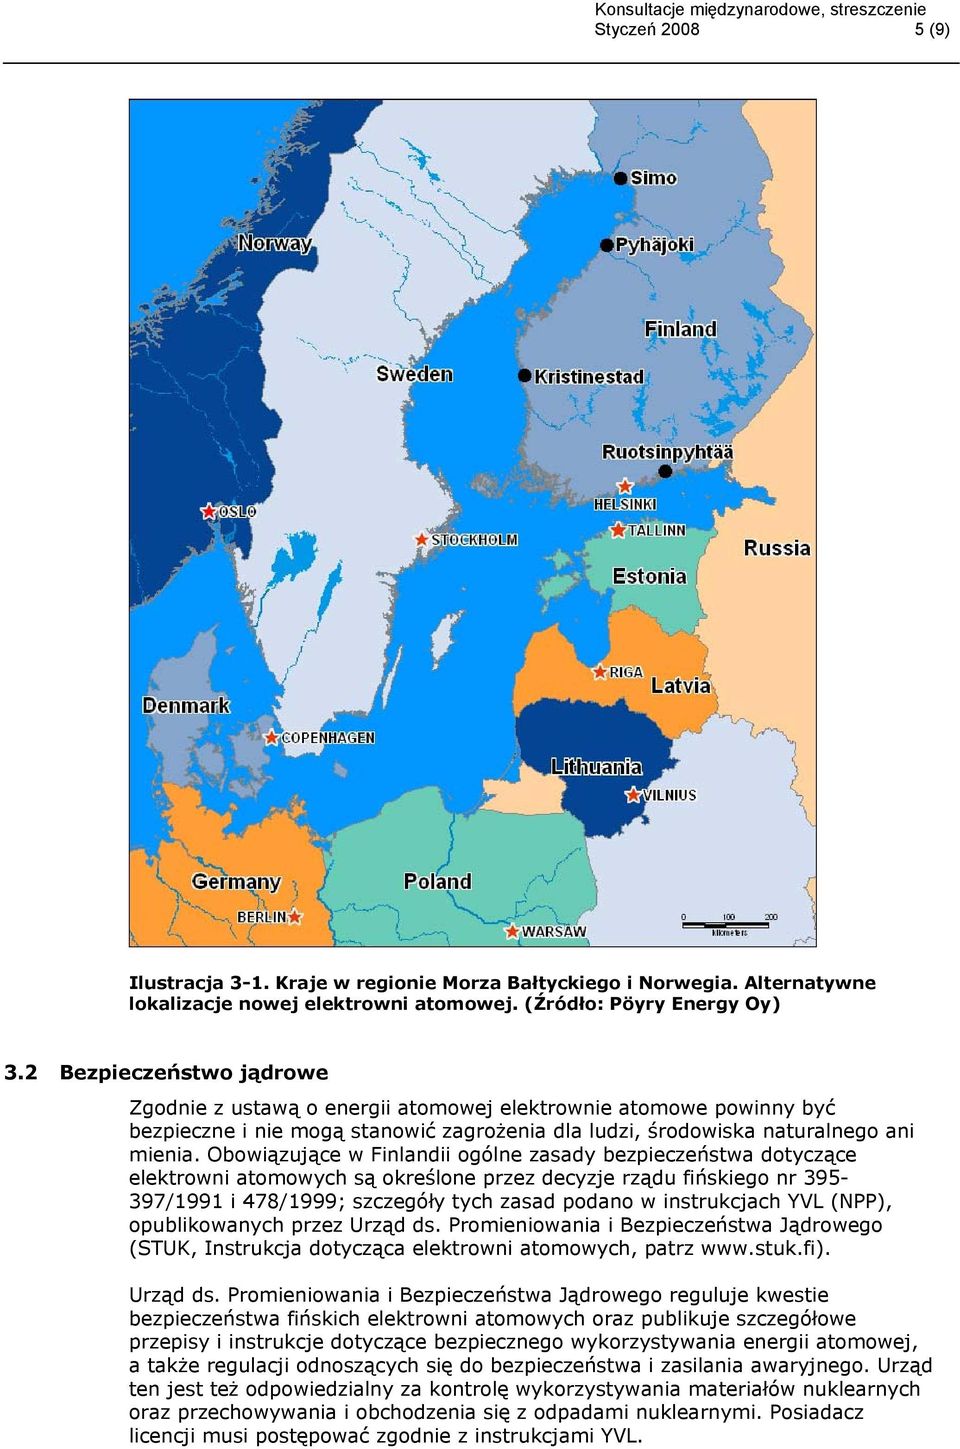 Obowiązujące w Finlandii ogólne zasady bezpieczeństwa dotyczące elektrowni atomowych są określone przez decyzje rządu fińskiego nr 395-397/1991 i 478/1999; szczegóły tych zasad podano w instrukcjach